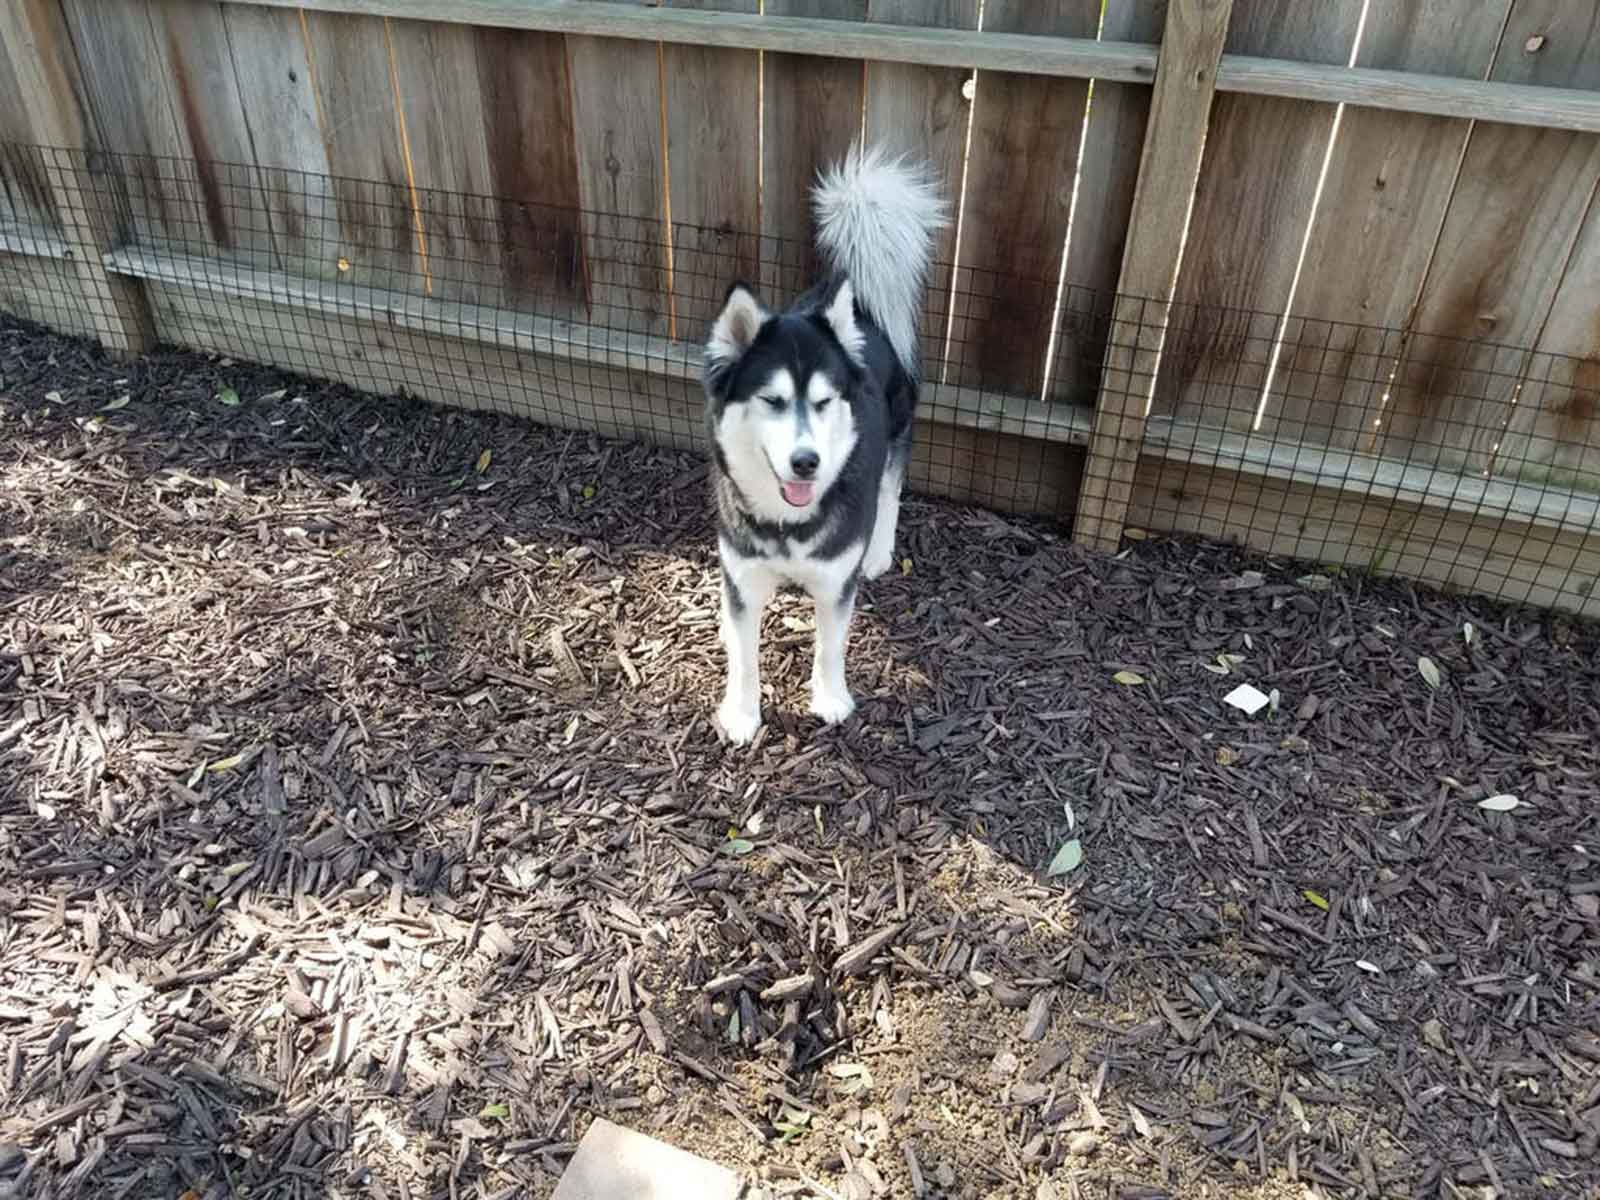 Husky Smiling In Front Of Wooden Fence With Dog Proofer Dig-Proofer System Installed